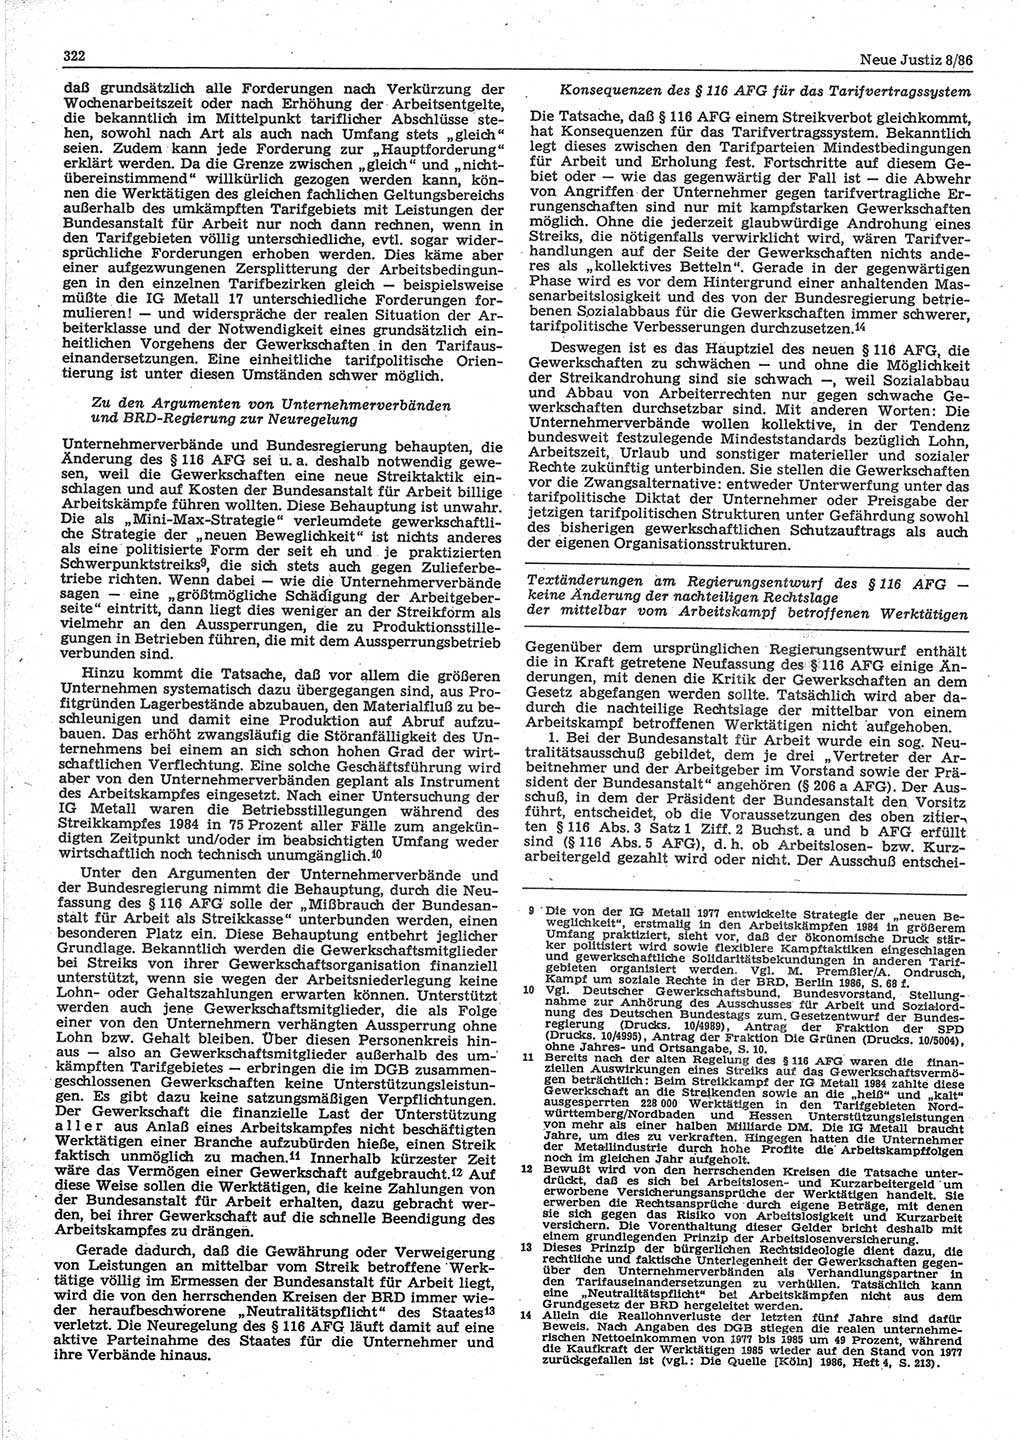 Neue Justiz (NJ), Zeitschrift für sozialistisches Recht und Gesetzlichkeit [Deutsche Demokratische Republik (DDR)], 40. Jahrgang 1986, Seite 322 (NJ DDR 1986, S. 322)